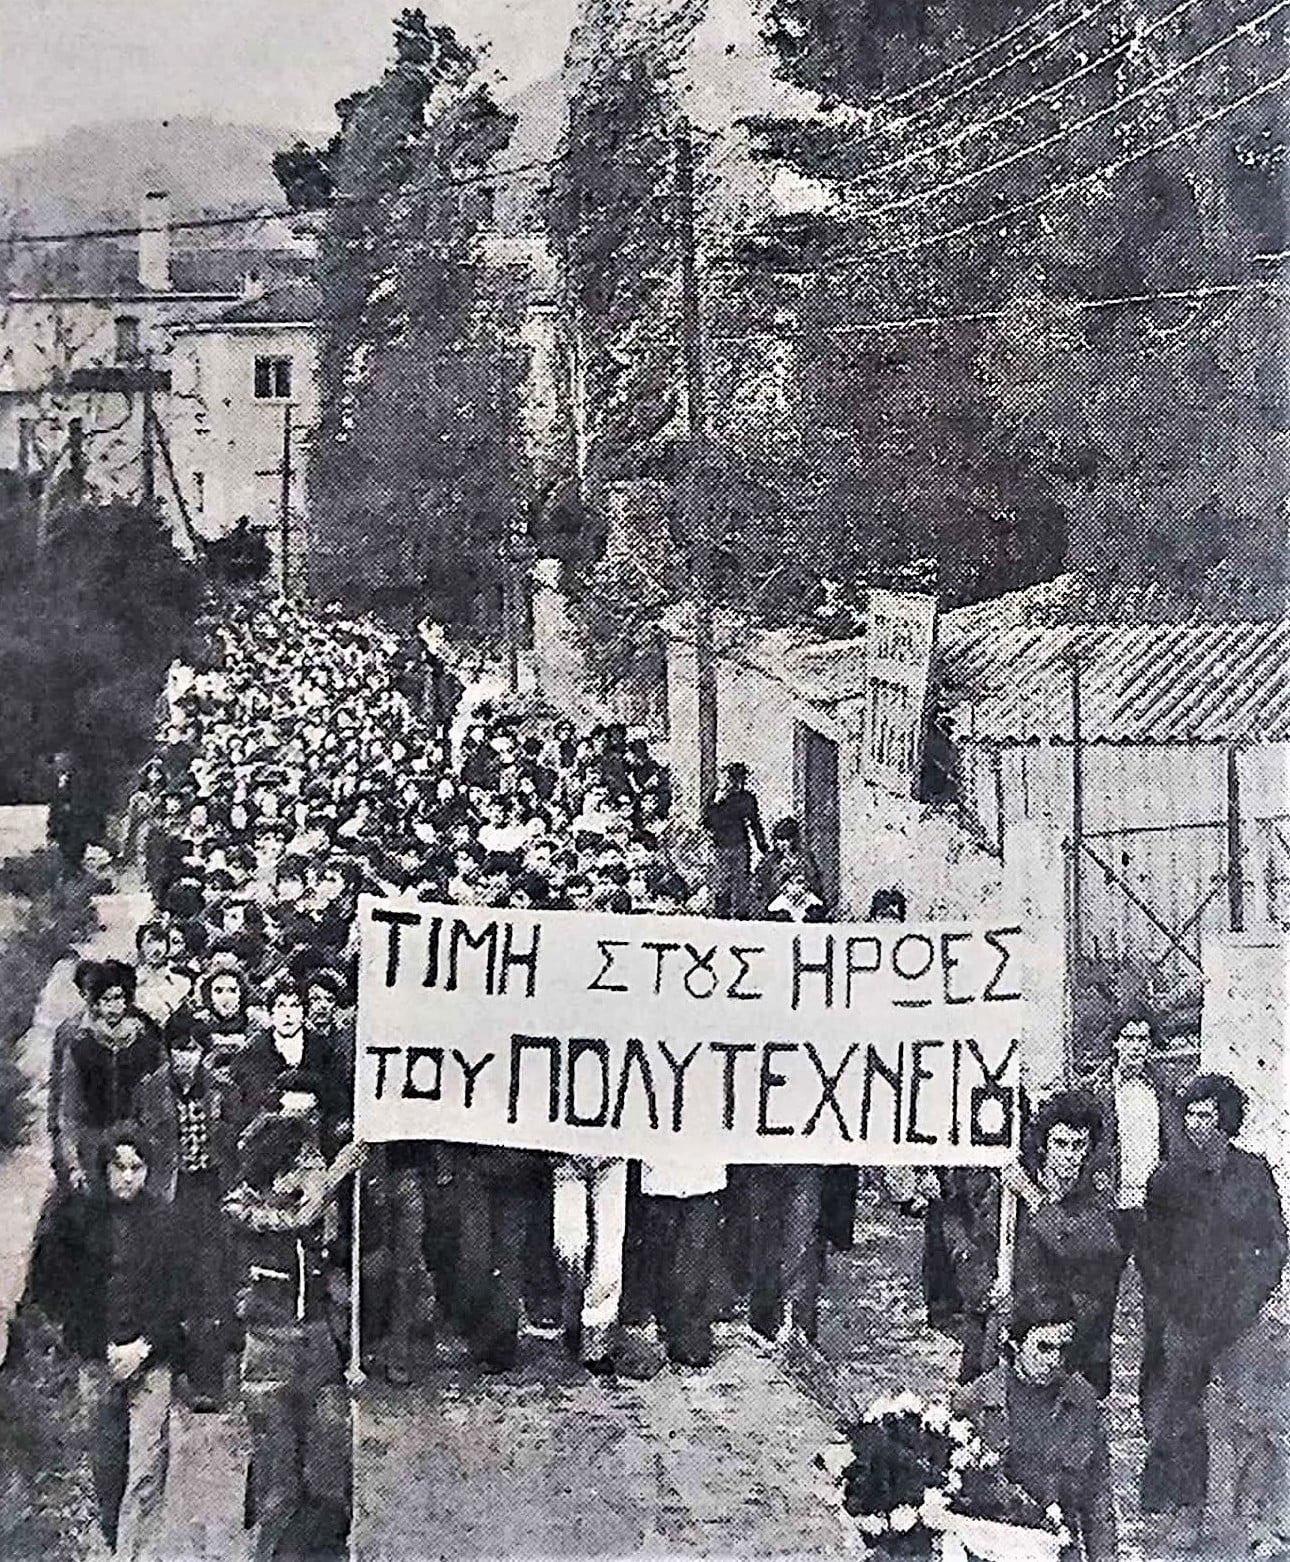 Μαθητική πορεία προς το Άγαλμα της Ελευθερίας στις 17-11-1975, που διοργάνωσε η Λεσβιακή Κίνηση μαθητών (ΛΕΚΙΜ).